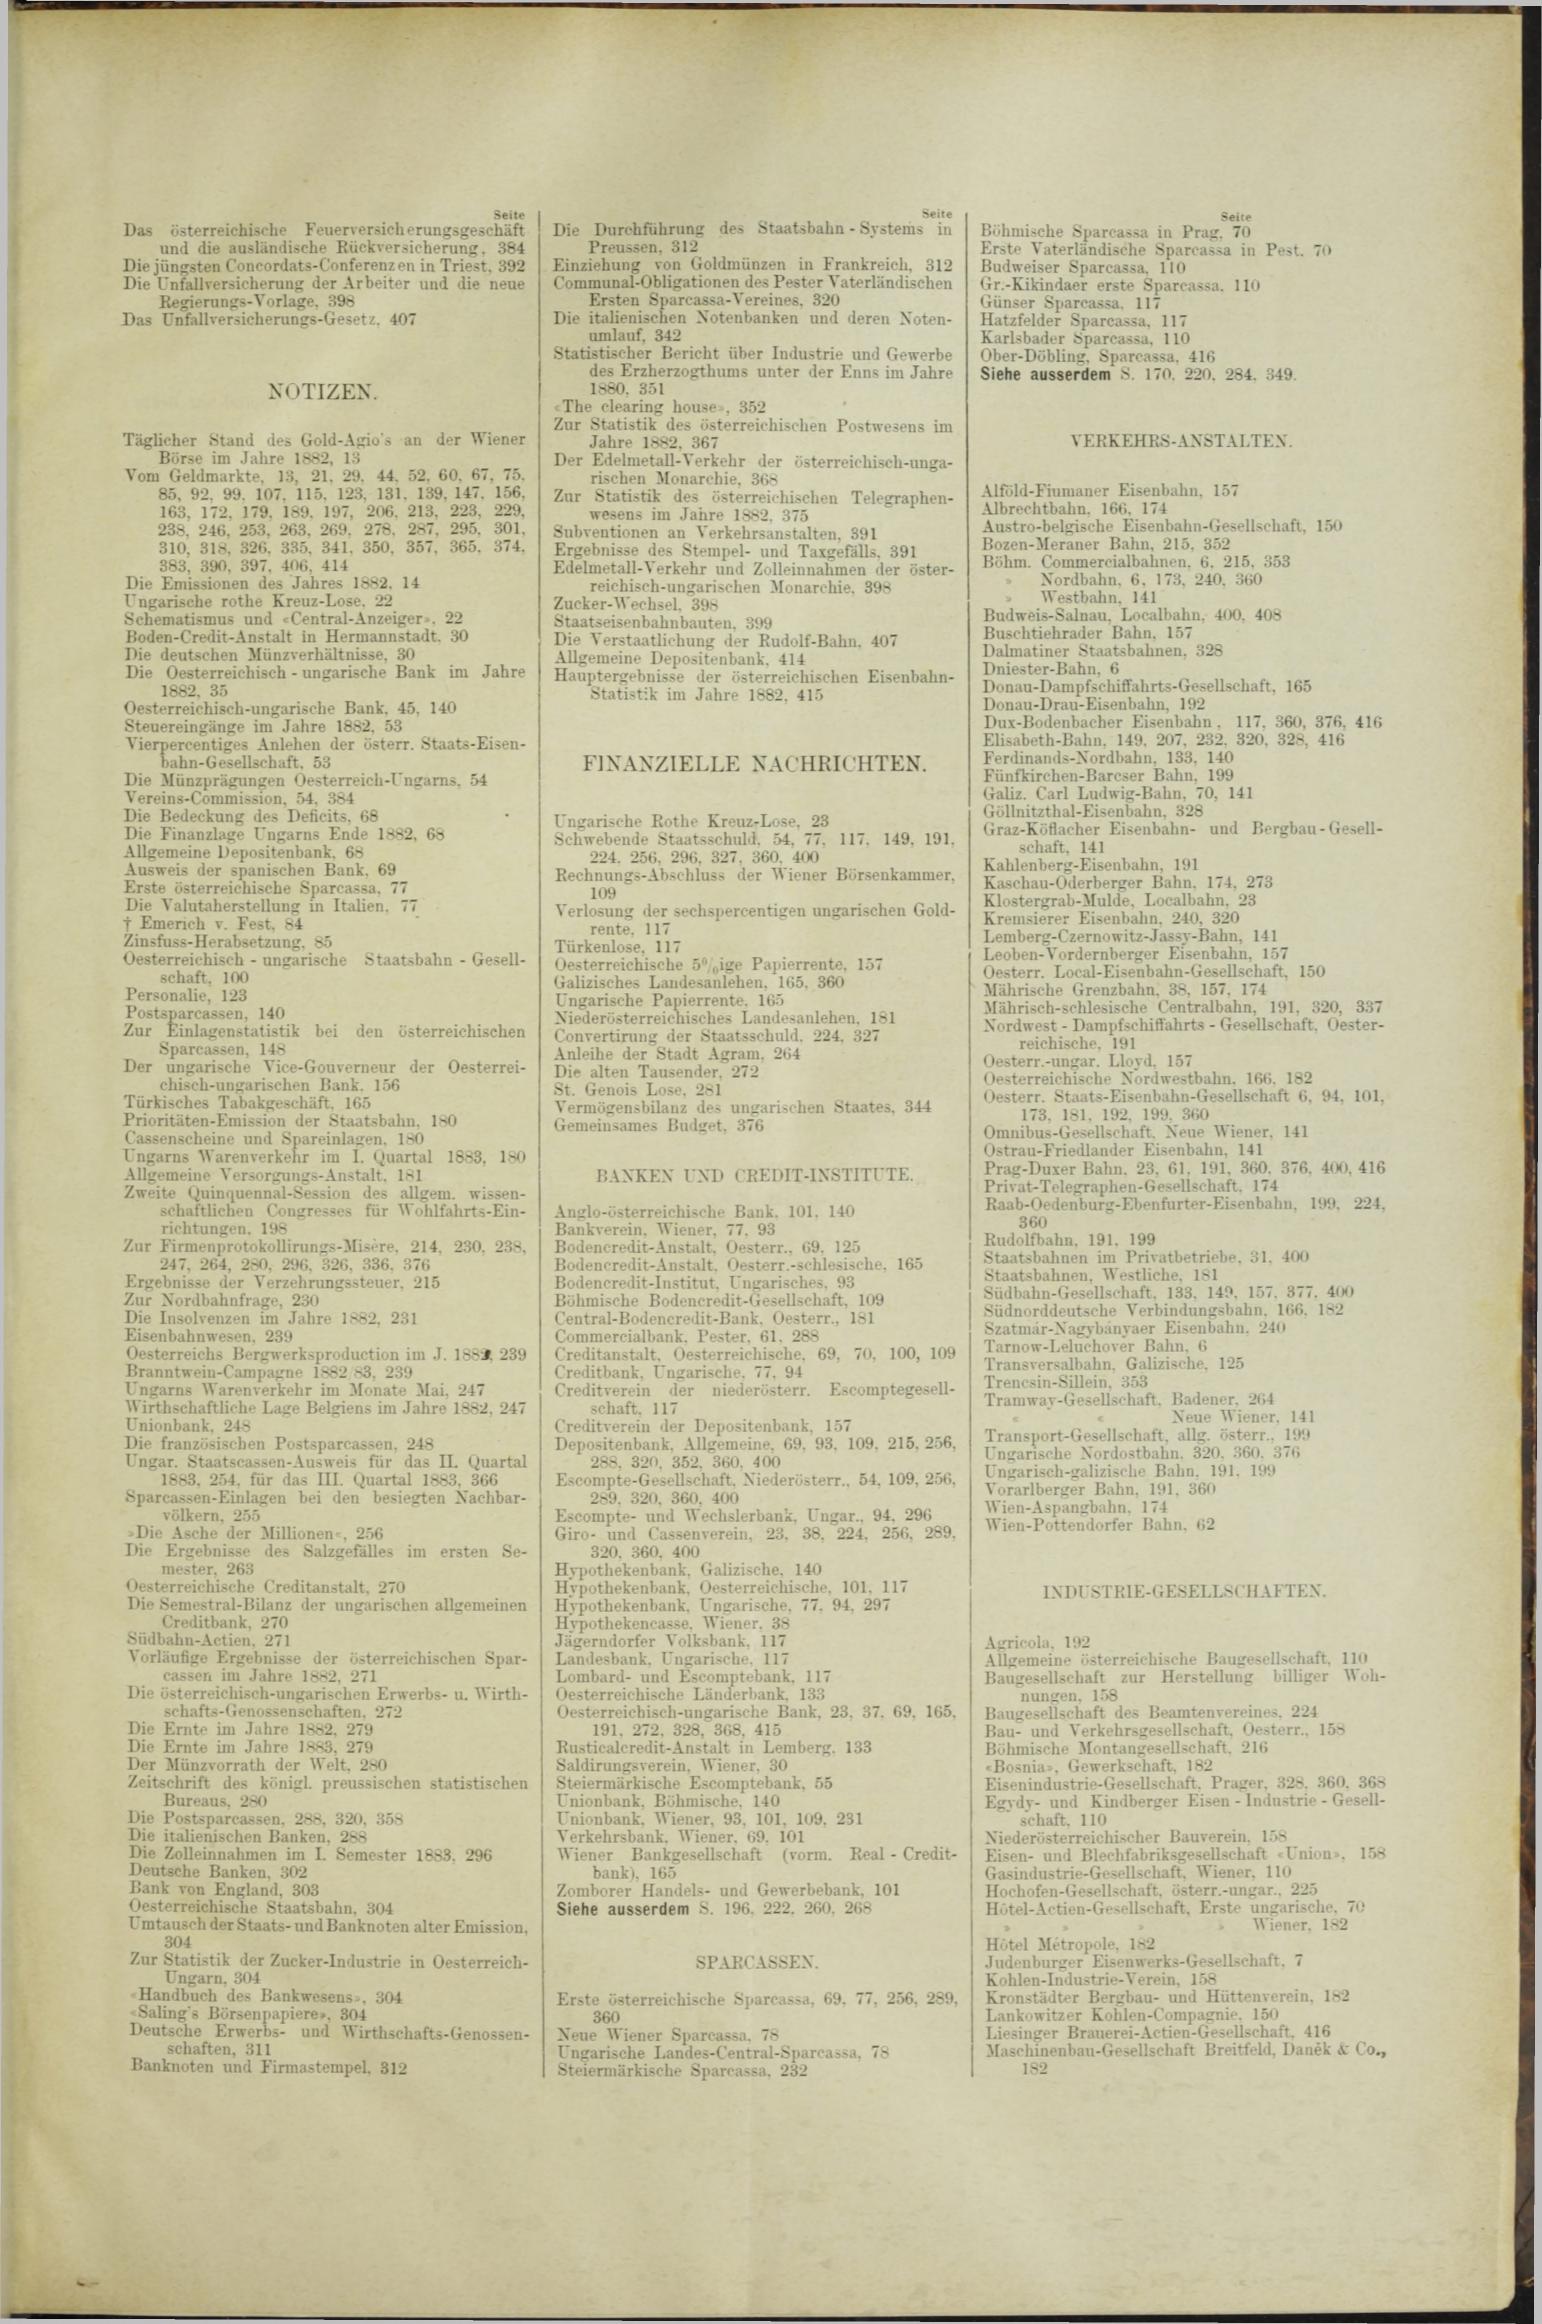 Der Tresor 20.12.1883 - Seite 11